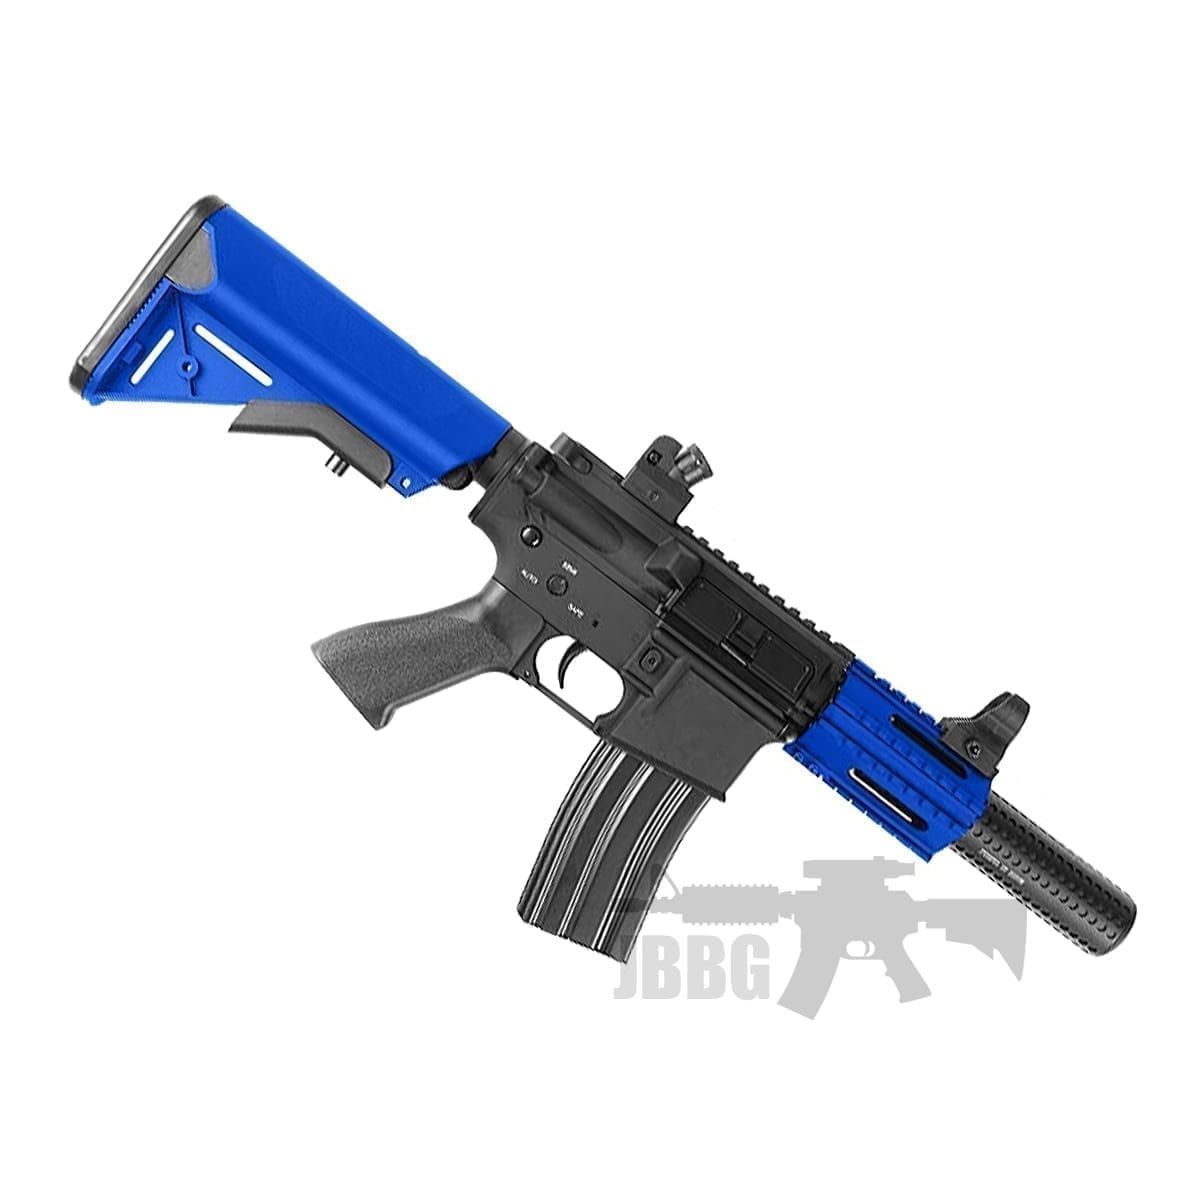 M4 Micro SD Gen3 Airsoft Gun - Just BB Guns